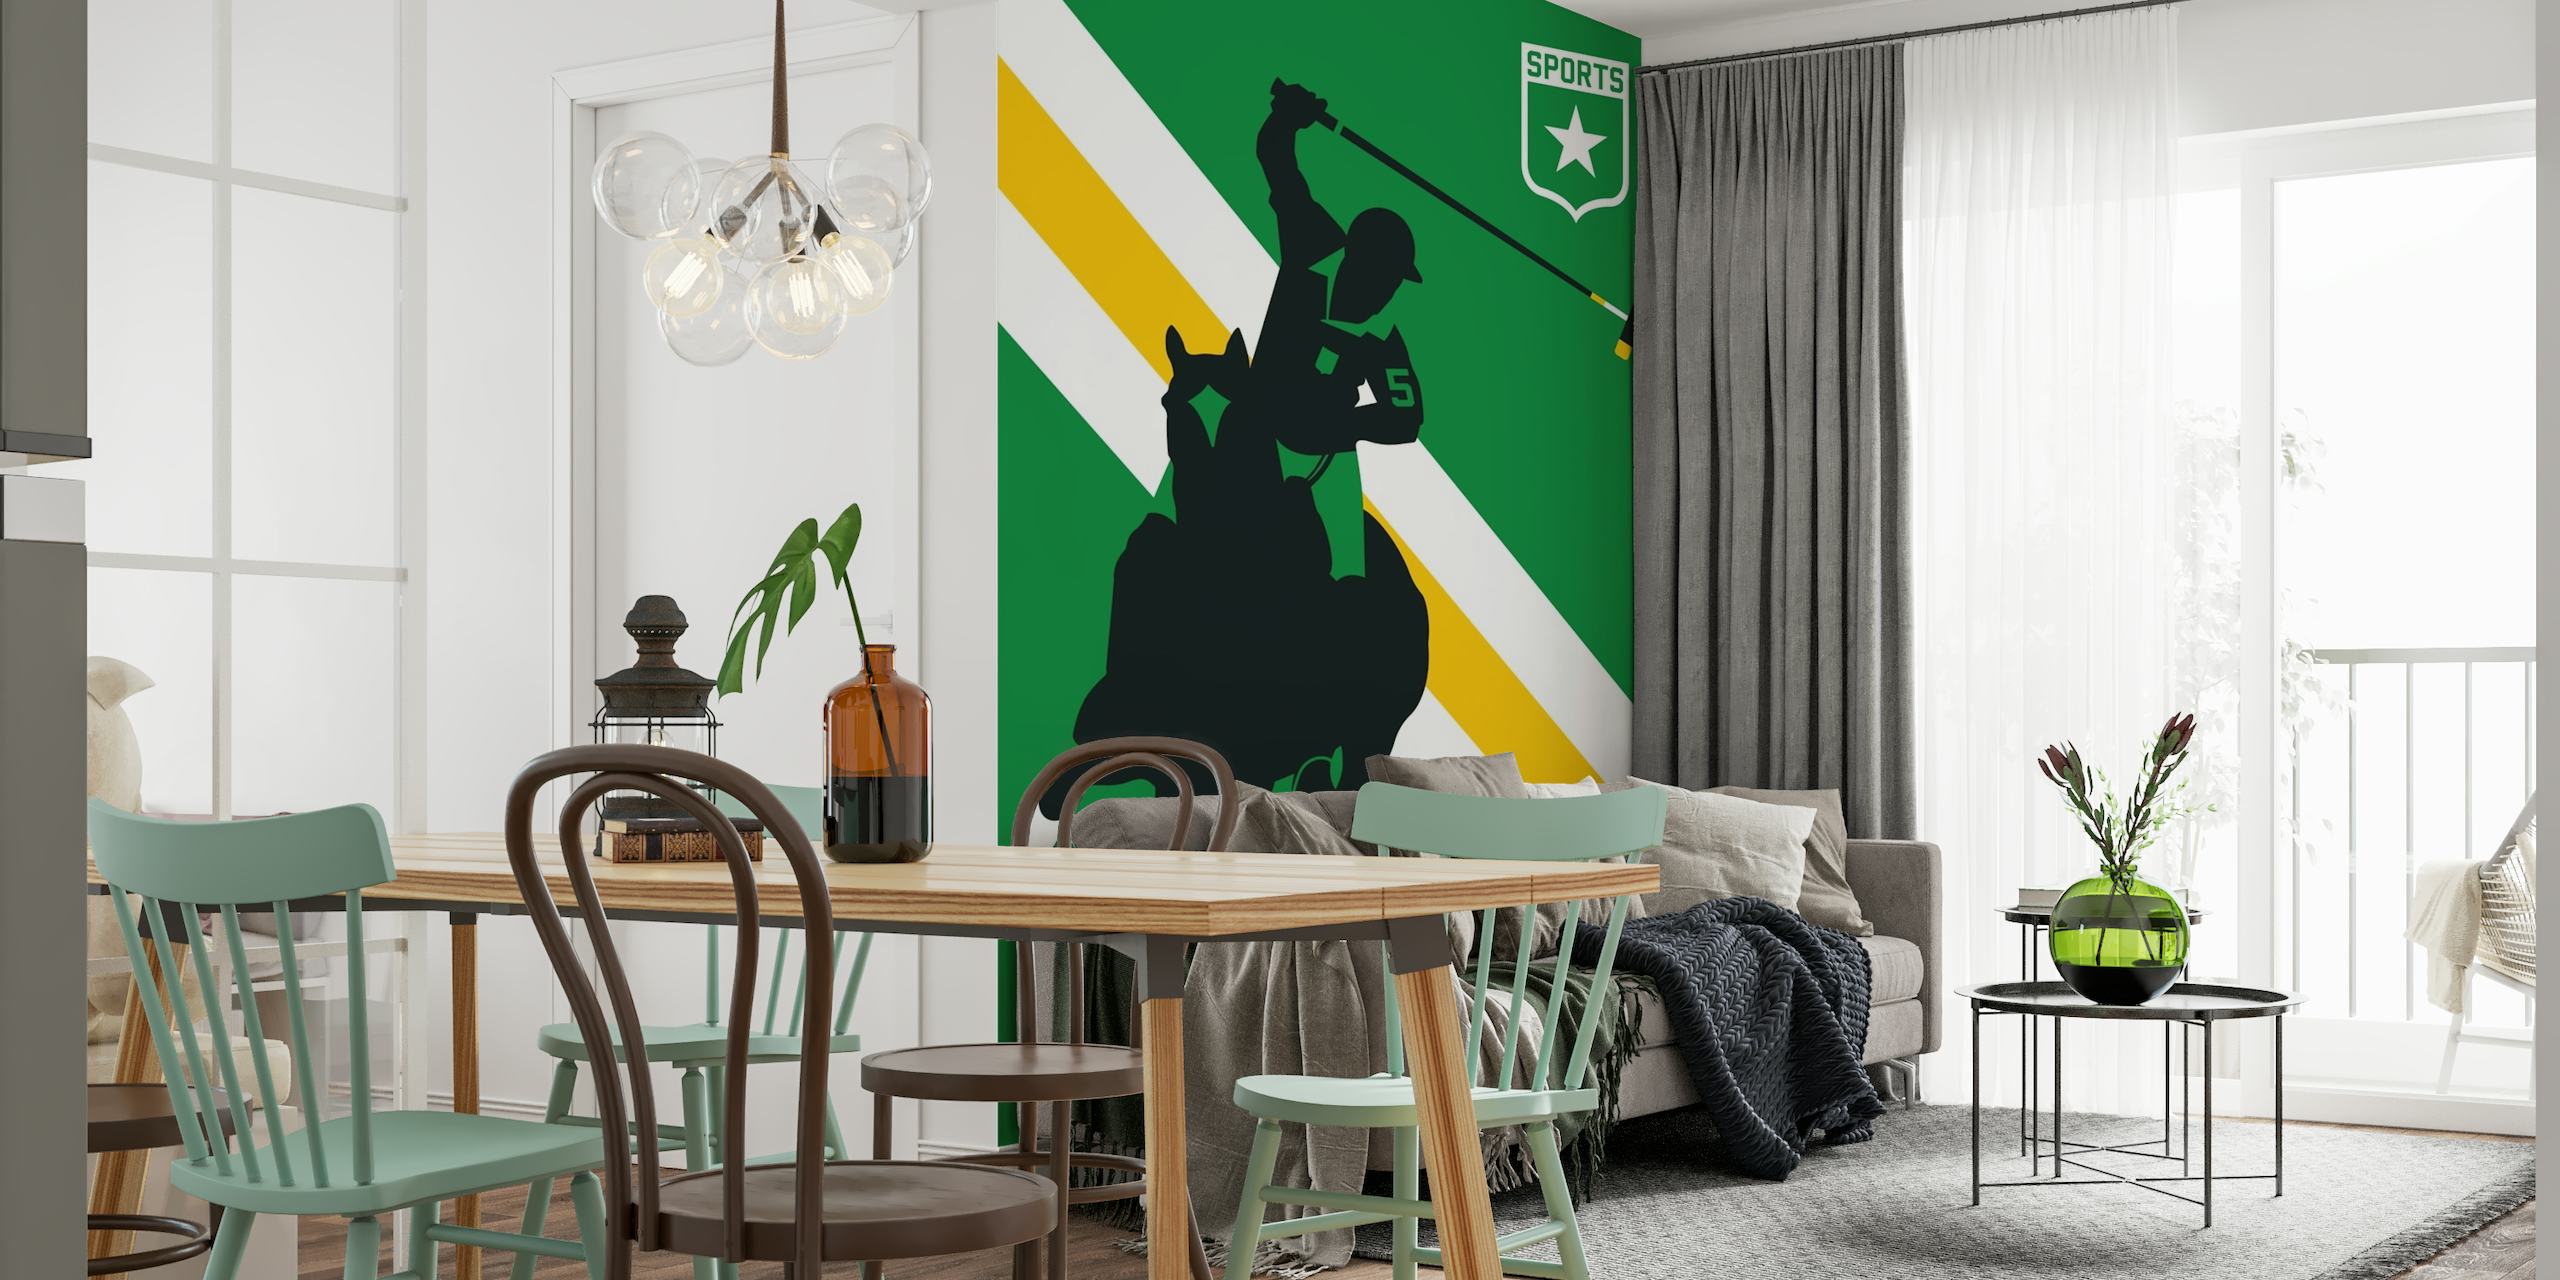 Horse Polo wallpaper